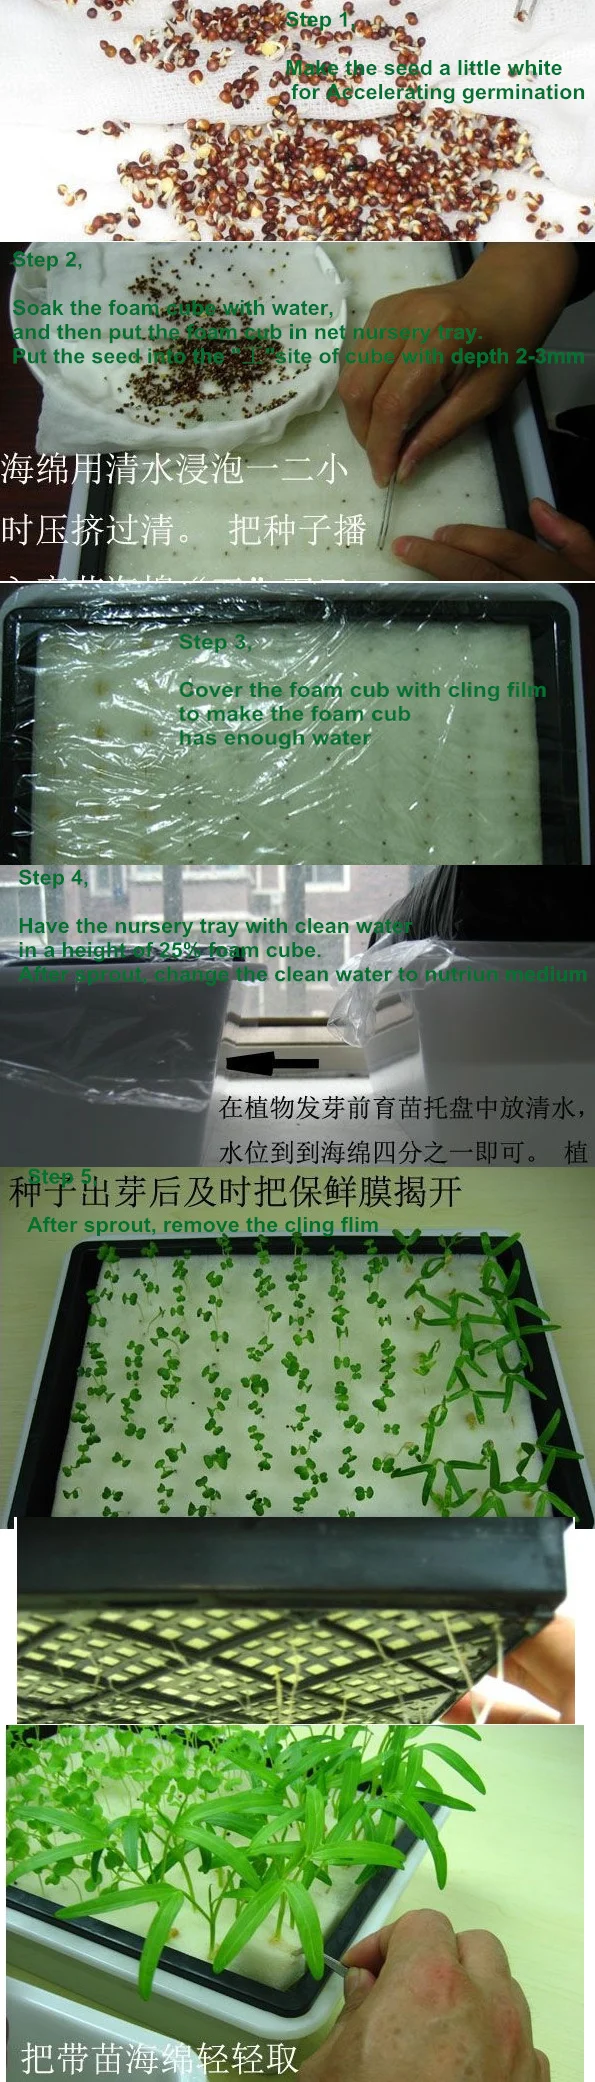 40 листов/партия) кубики пены для запуска семян для гидропоники системы(1